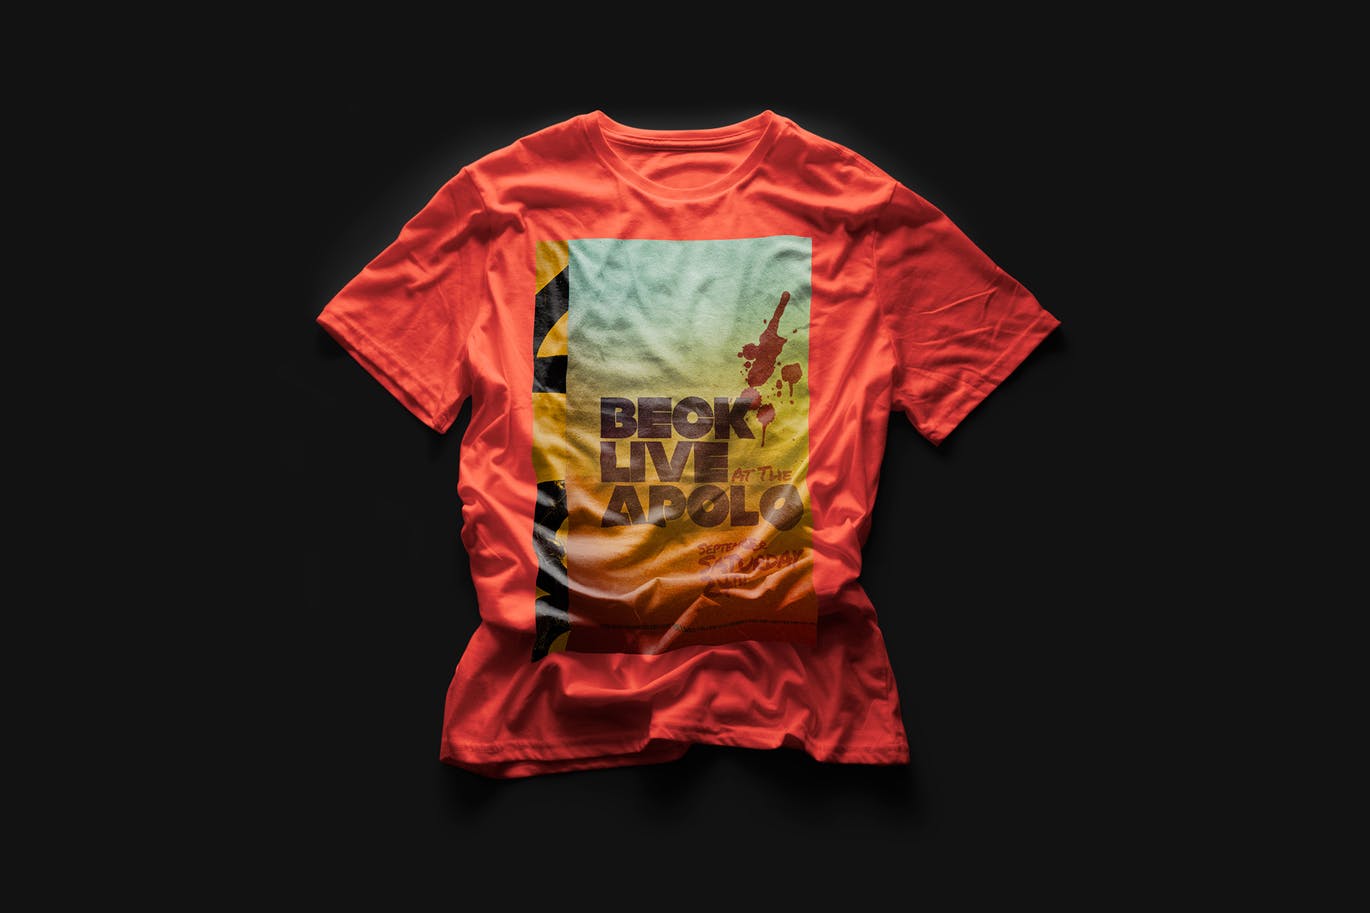 都市风格T恤印花图案设计预览样机第一素材精选 Urban T-Shirt Mock-Up插图(6)